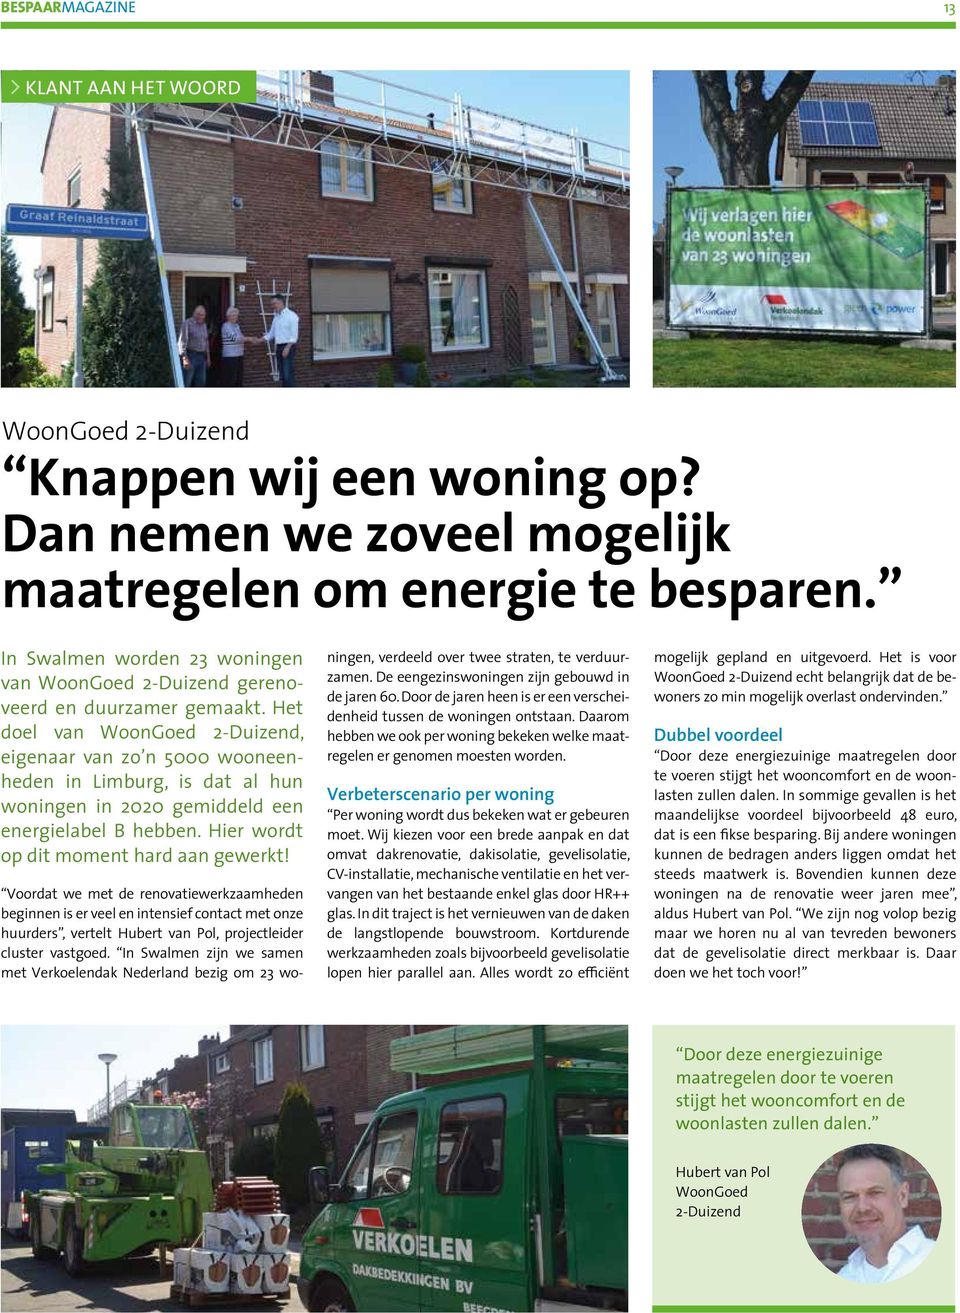 Het doel van WoonGoed 2-Duizend, eigenaar van zo n 5000 wooneenheden in Limburg, is dat al hun woningen in 2020 gemiddeld een energielabel B hebben. Hier wordt op dit moment hard aan gewerkt!